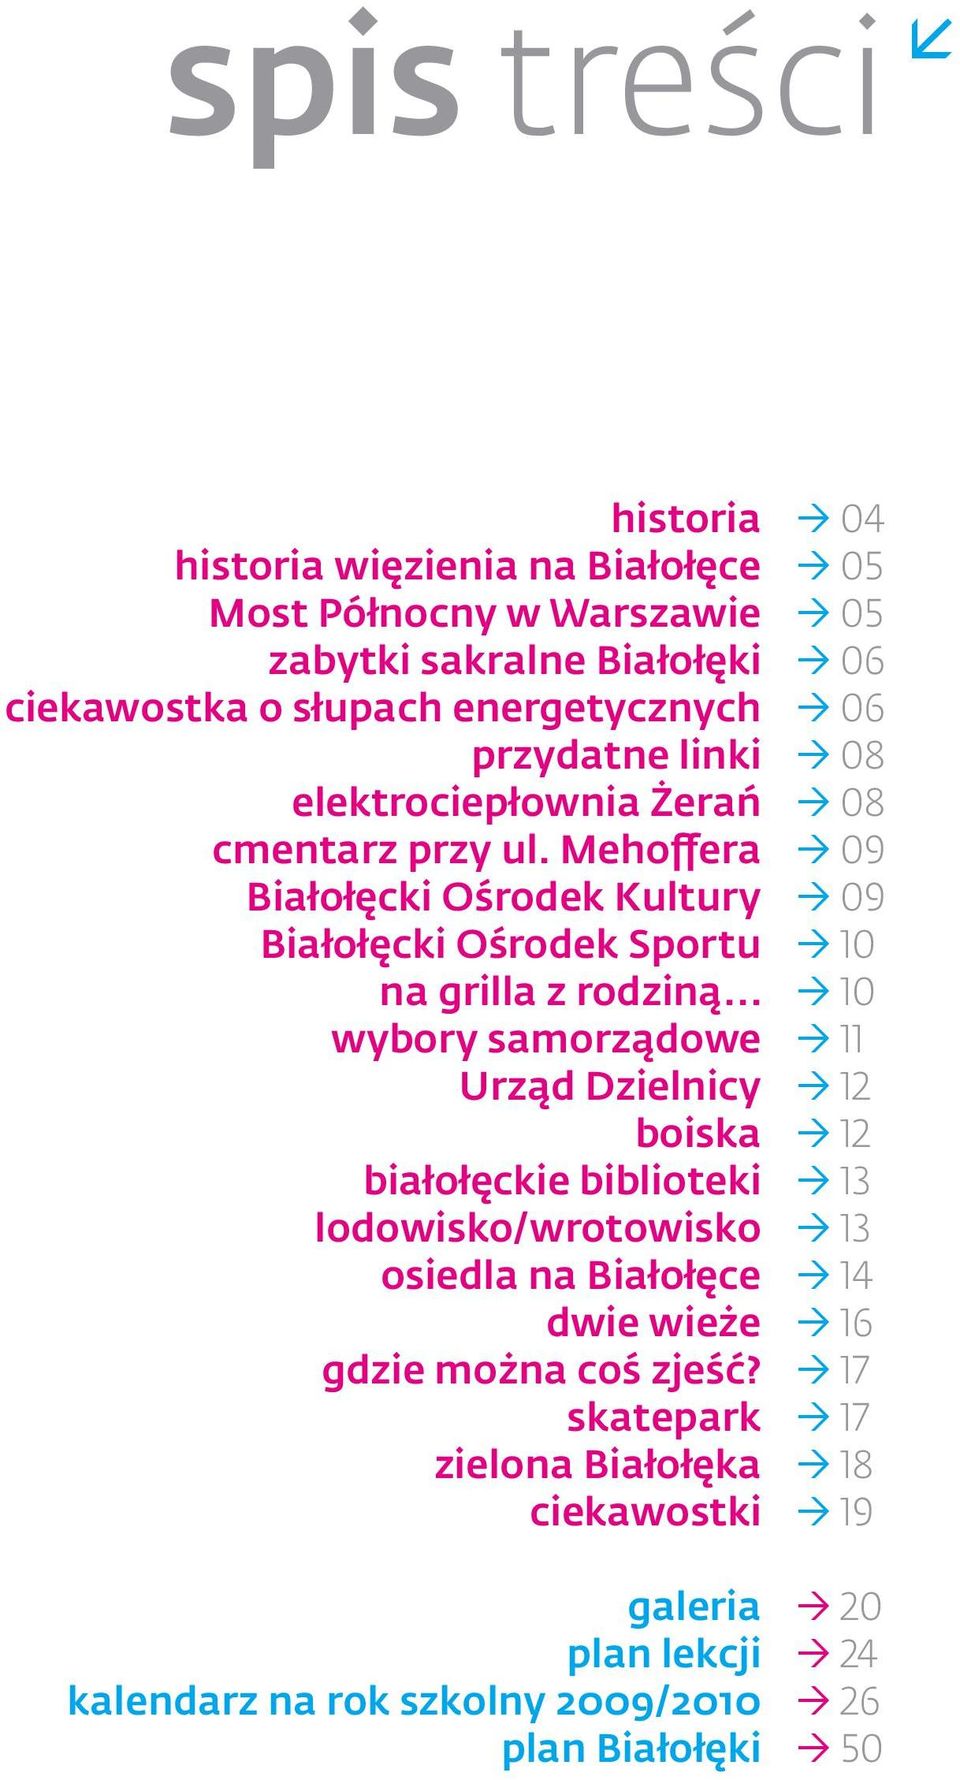 .. wybory samorządowe Urząd Dzielnicy boiska białołęckie biblioteki lodowisko/wrotowisko osiedla na Białołęce dwie wieże gdzie można coś zjeść?